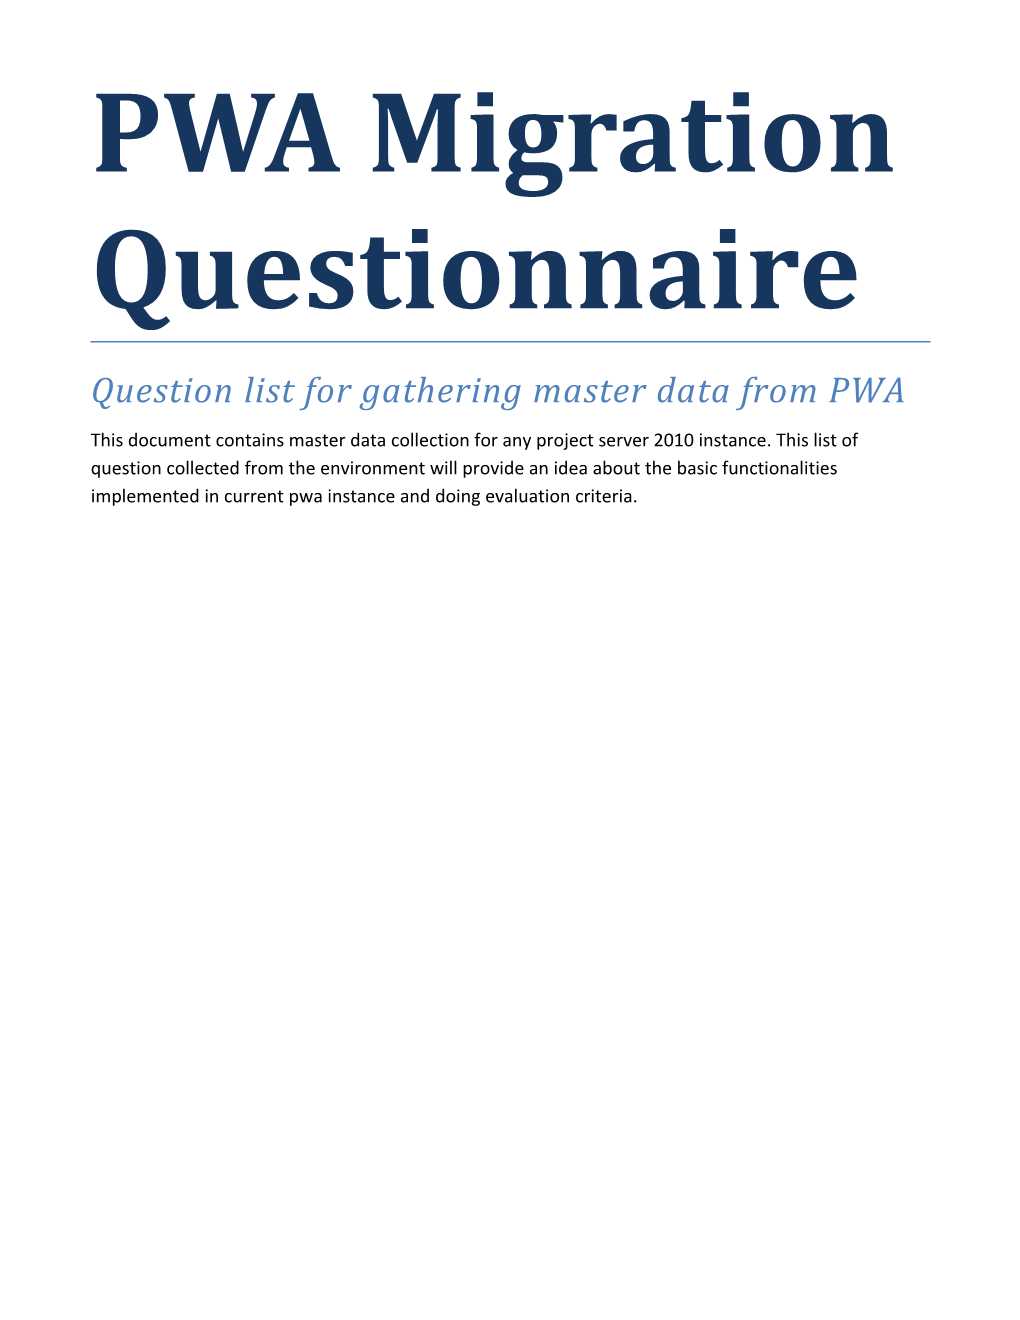 PWA Migration Questionnaire